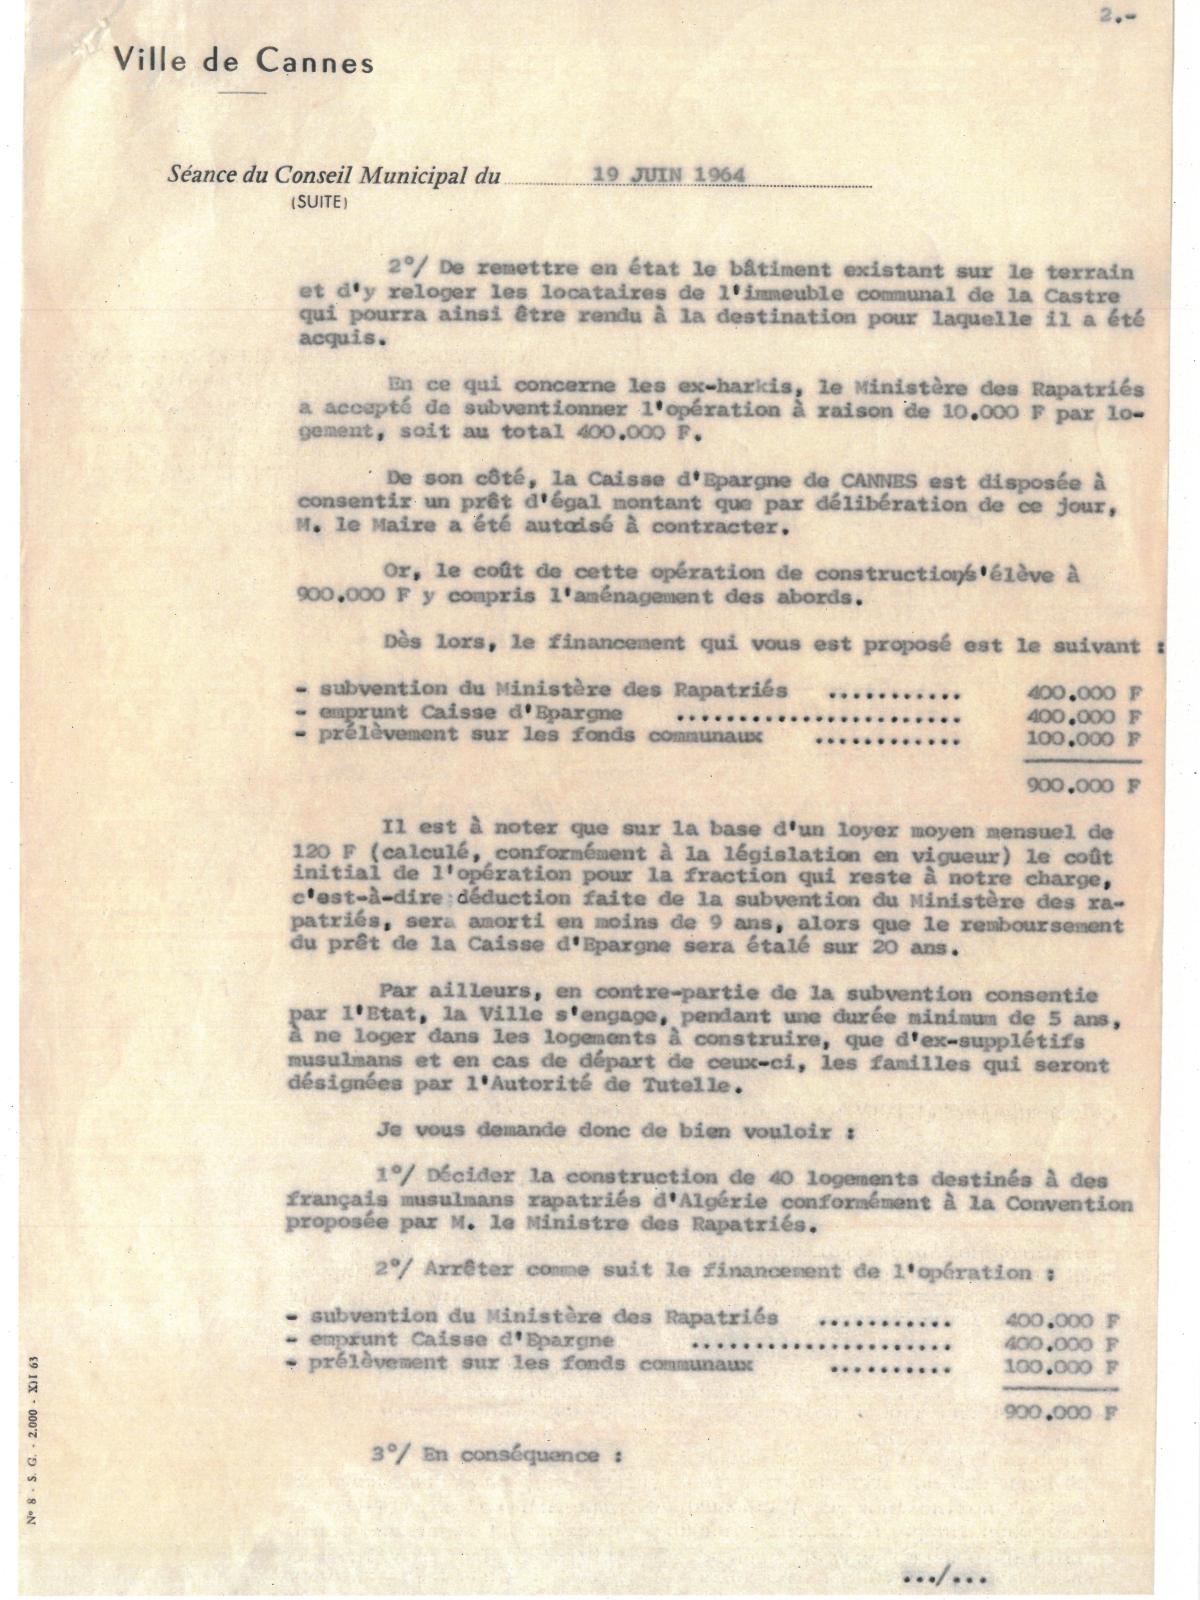 Illustration 8, p. 2 : accueil des Harkis à Cannes, délibérations du conseil municipal, séance extraordinaire du 19 juin 1964 (Archives de Cannes, 22W238)